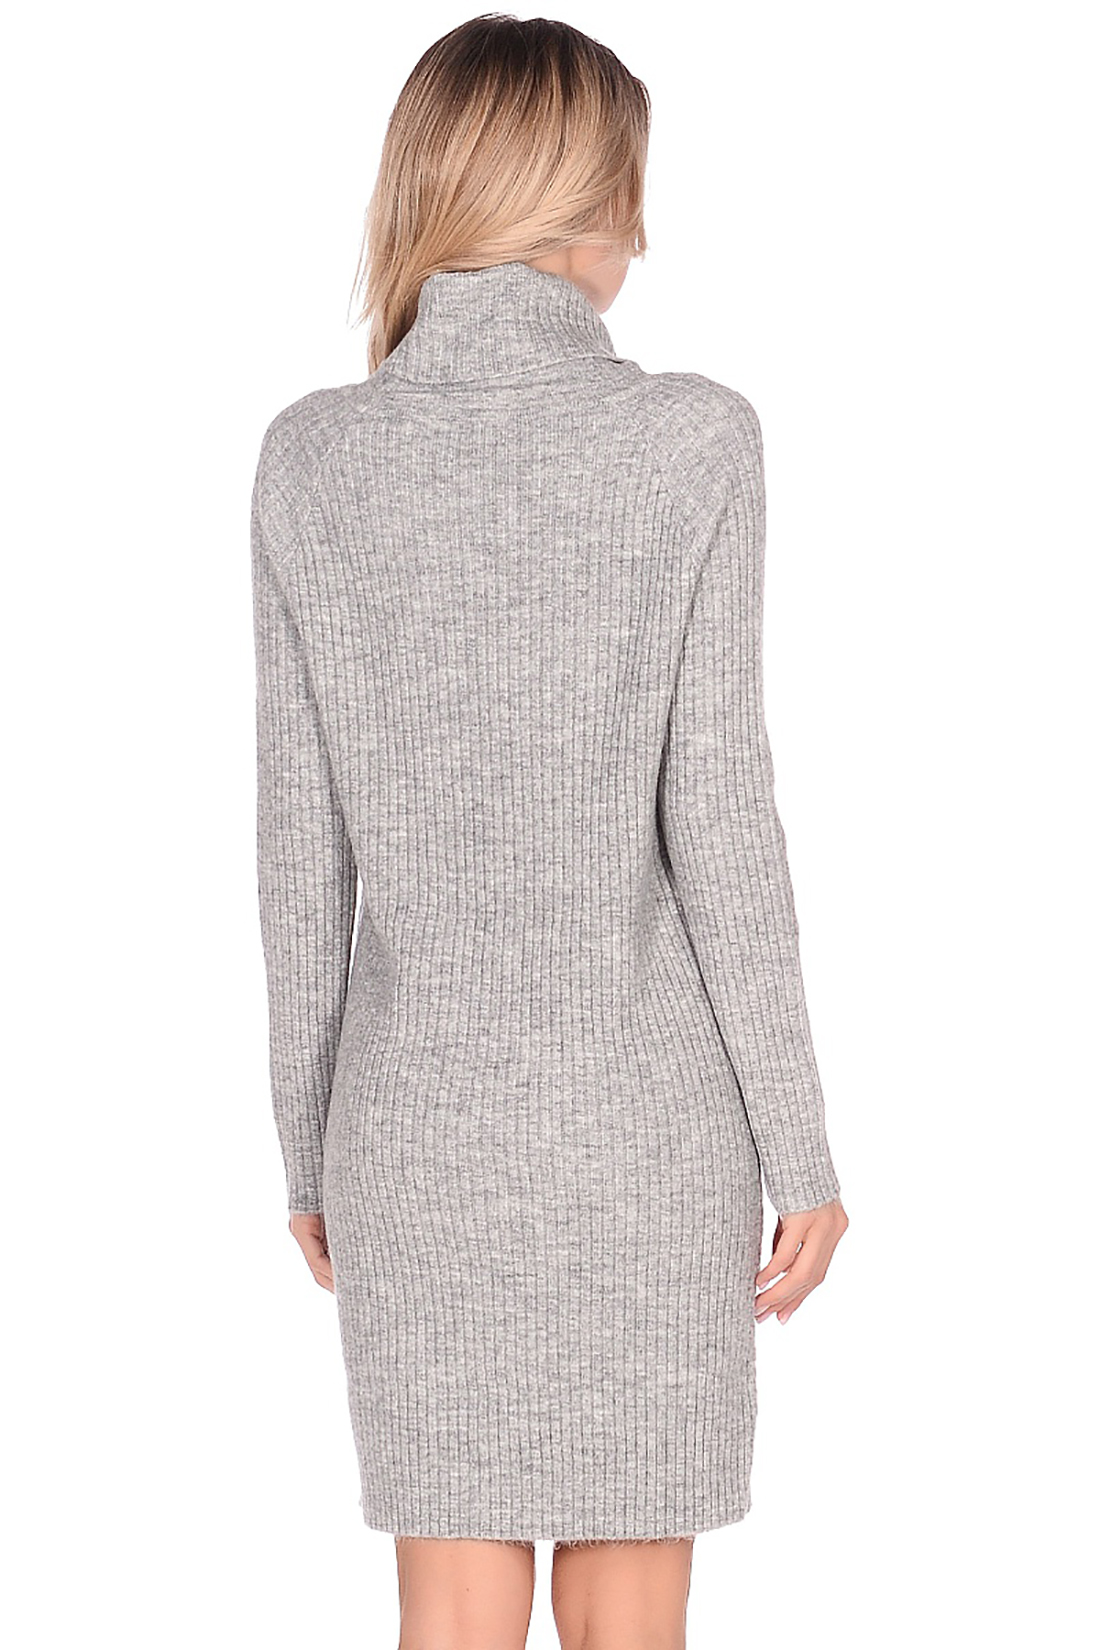 Платье-свитер с узором (арт. baon B459542), размер XL, цвет silver melange#серый Платье-свитер с узором (арт. baon B459542) - фото 2